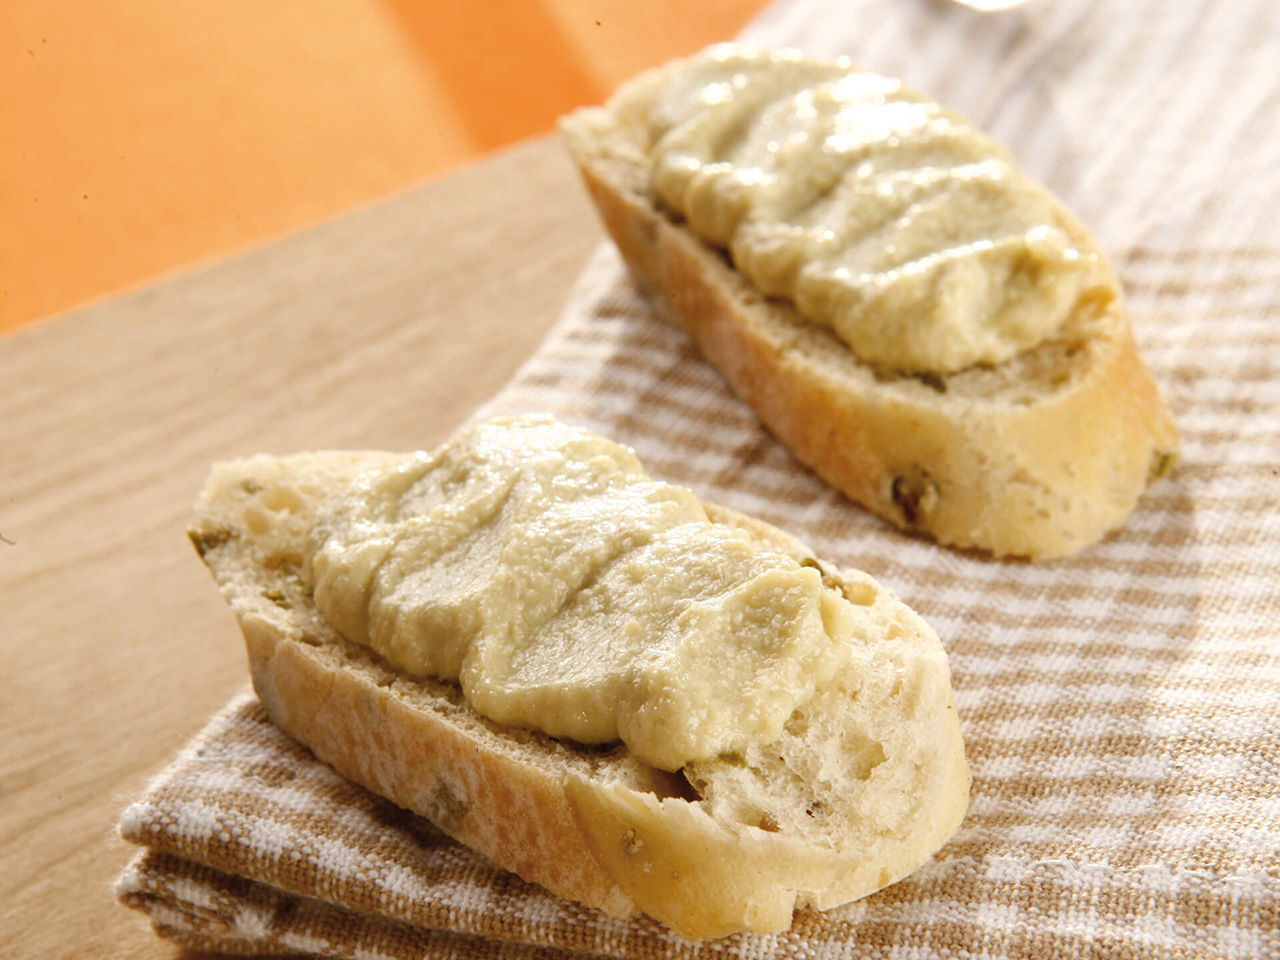 Artichoke cream on slice of bread